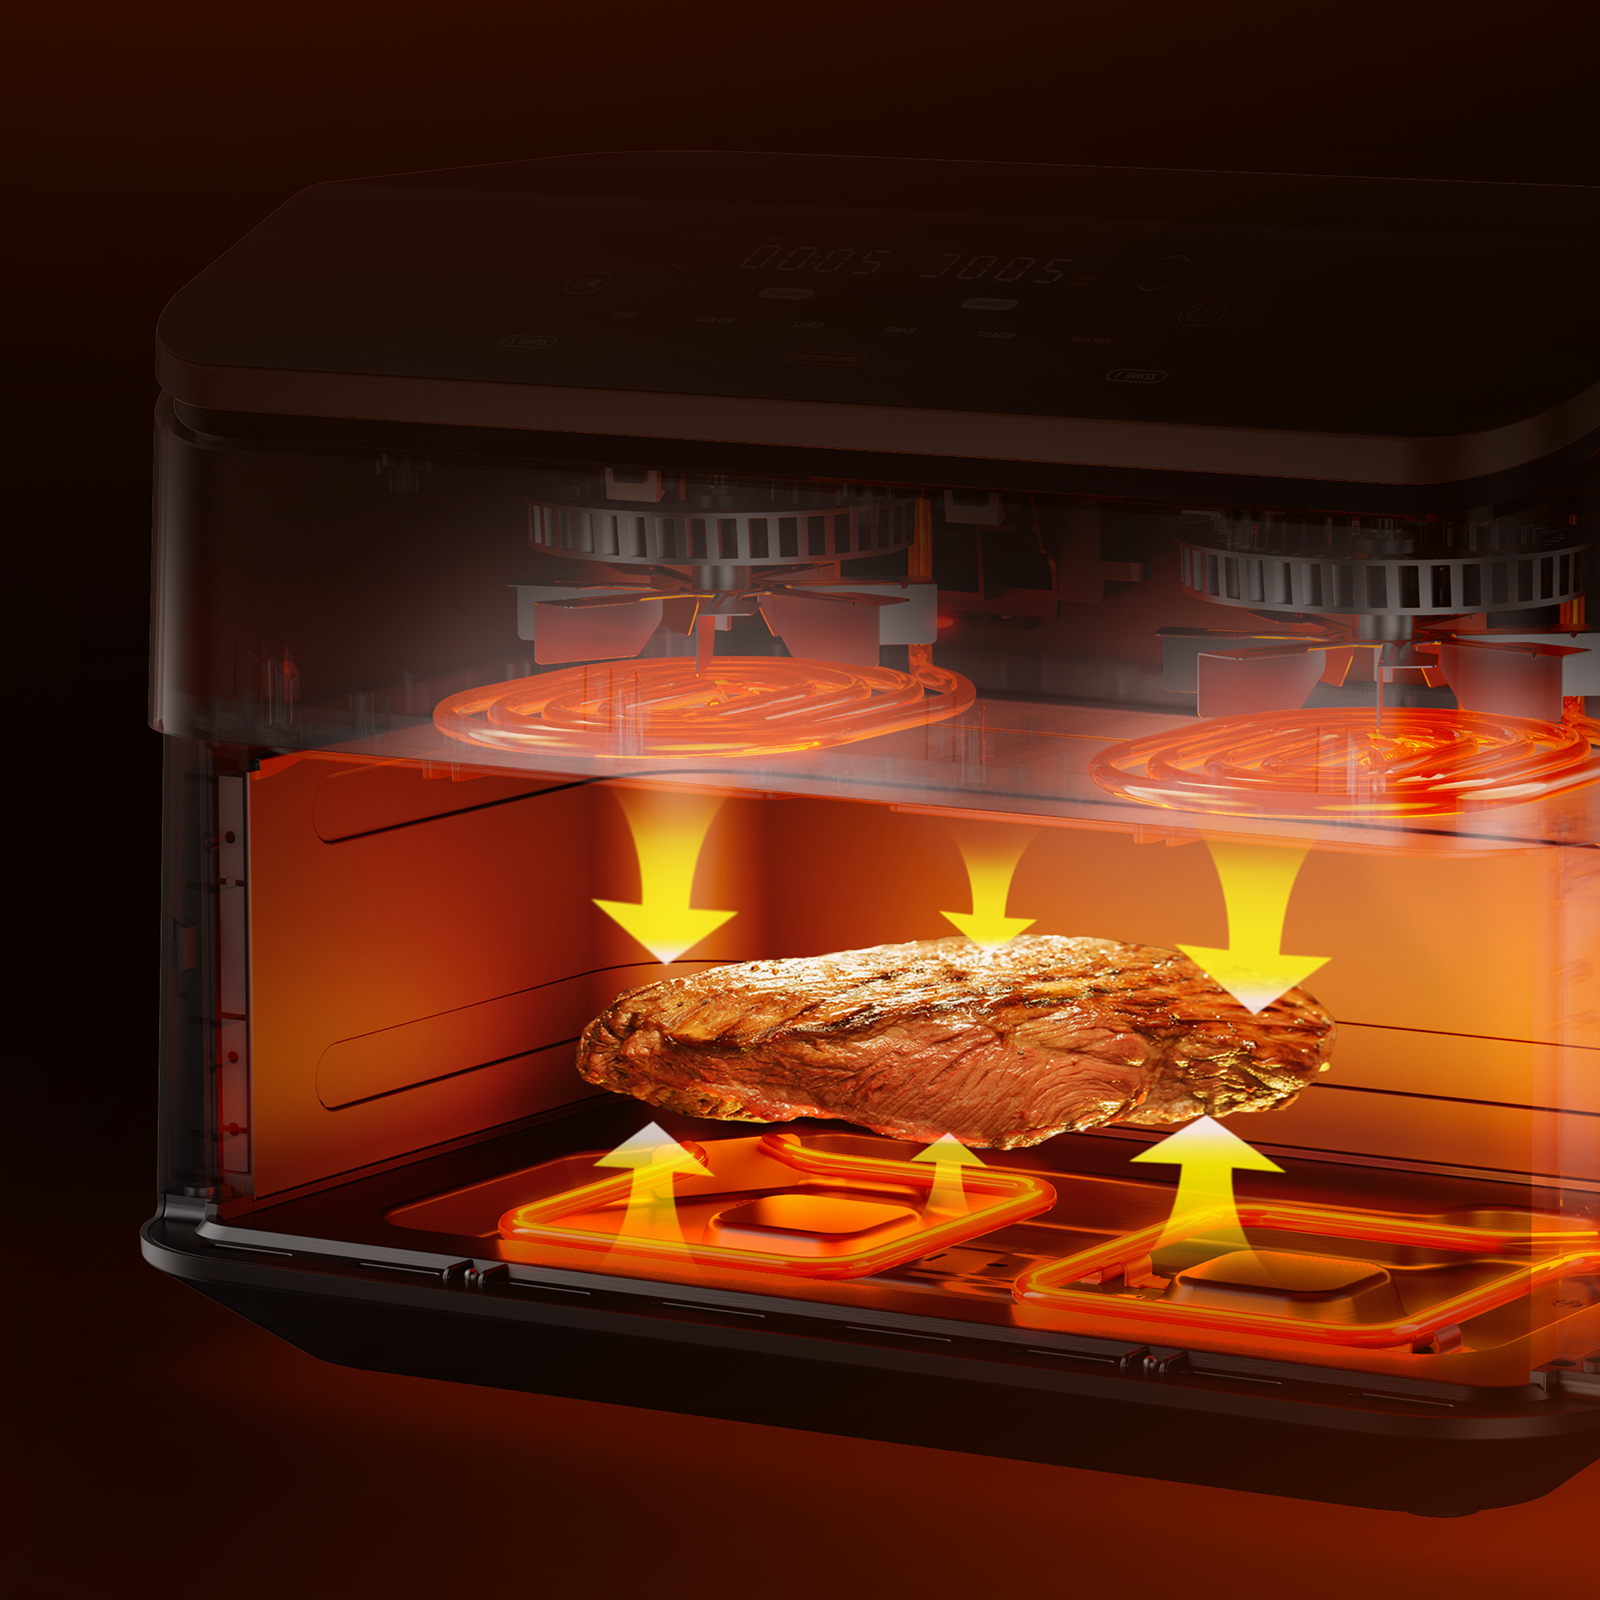 COSORI presenta Dual Blaze Twinfry Chef Edition, la única freidora de aire del mercado con cuatro resistencias para cocinar sin precalentar y dar la vuelta a los alimentos